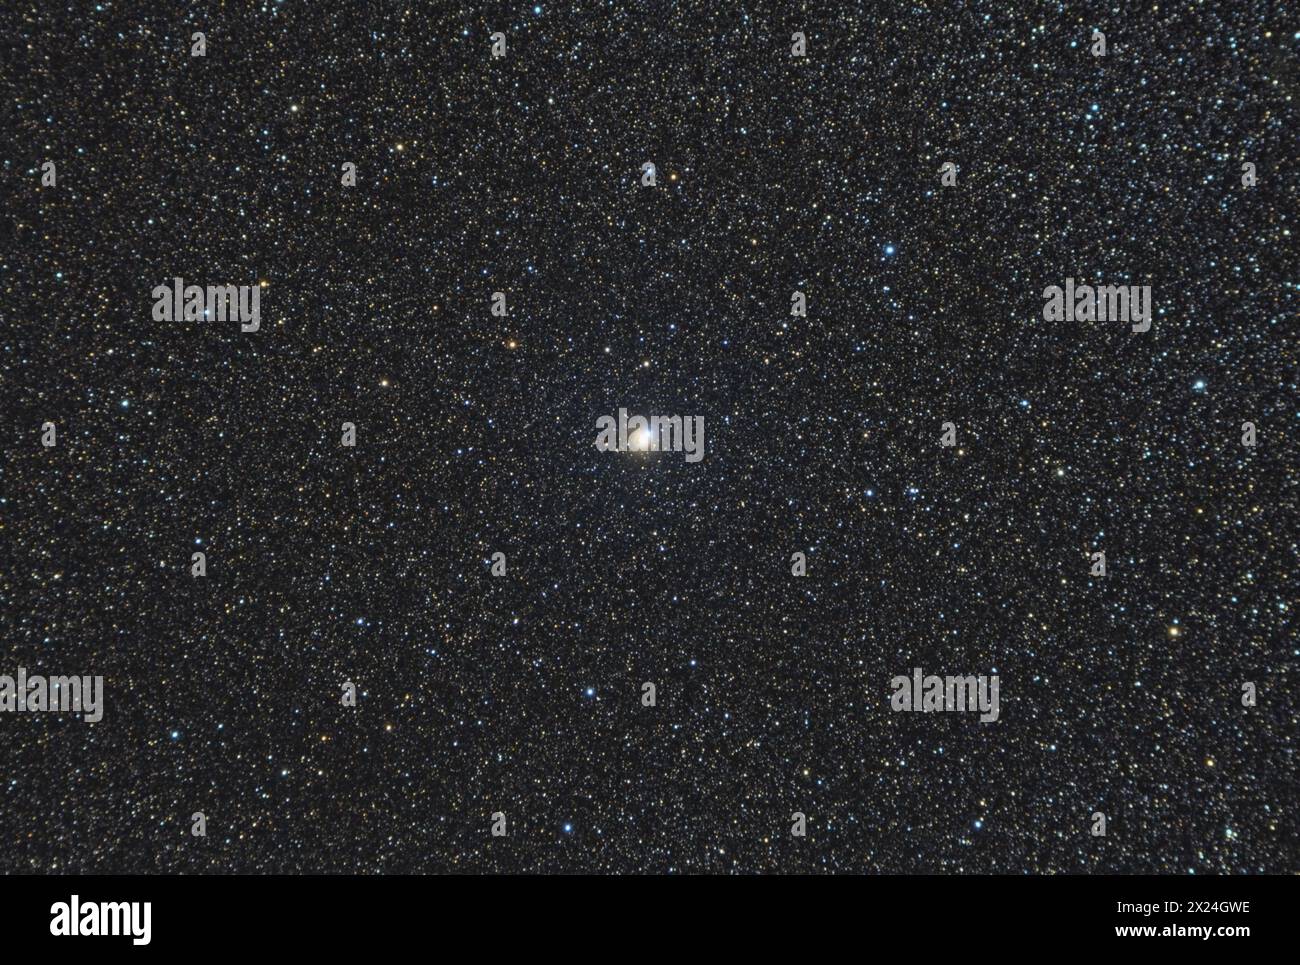 Il sistema a doppia stella Albireo nella costellazione di Cygnus, sfondi del cielo notturno con mappa delle stelle Foto Stock